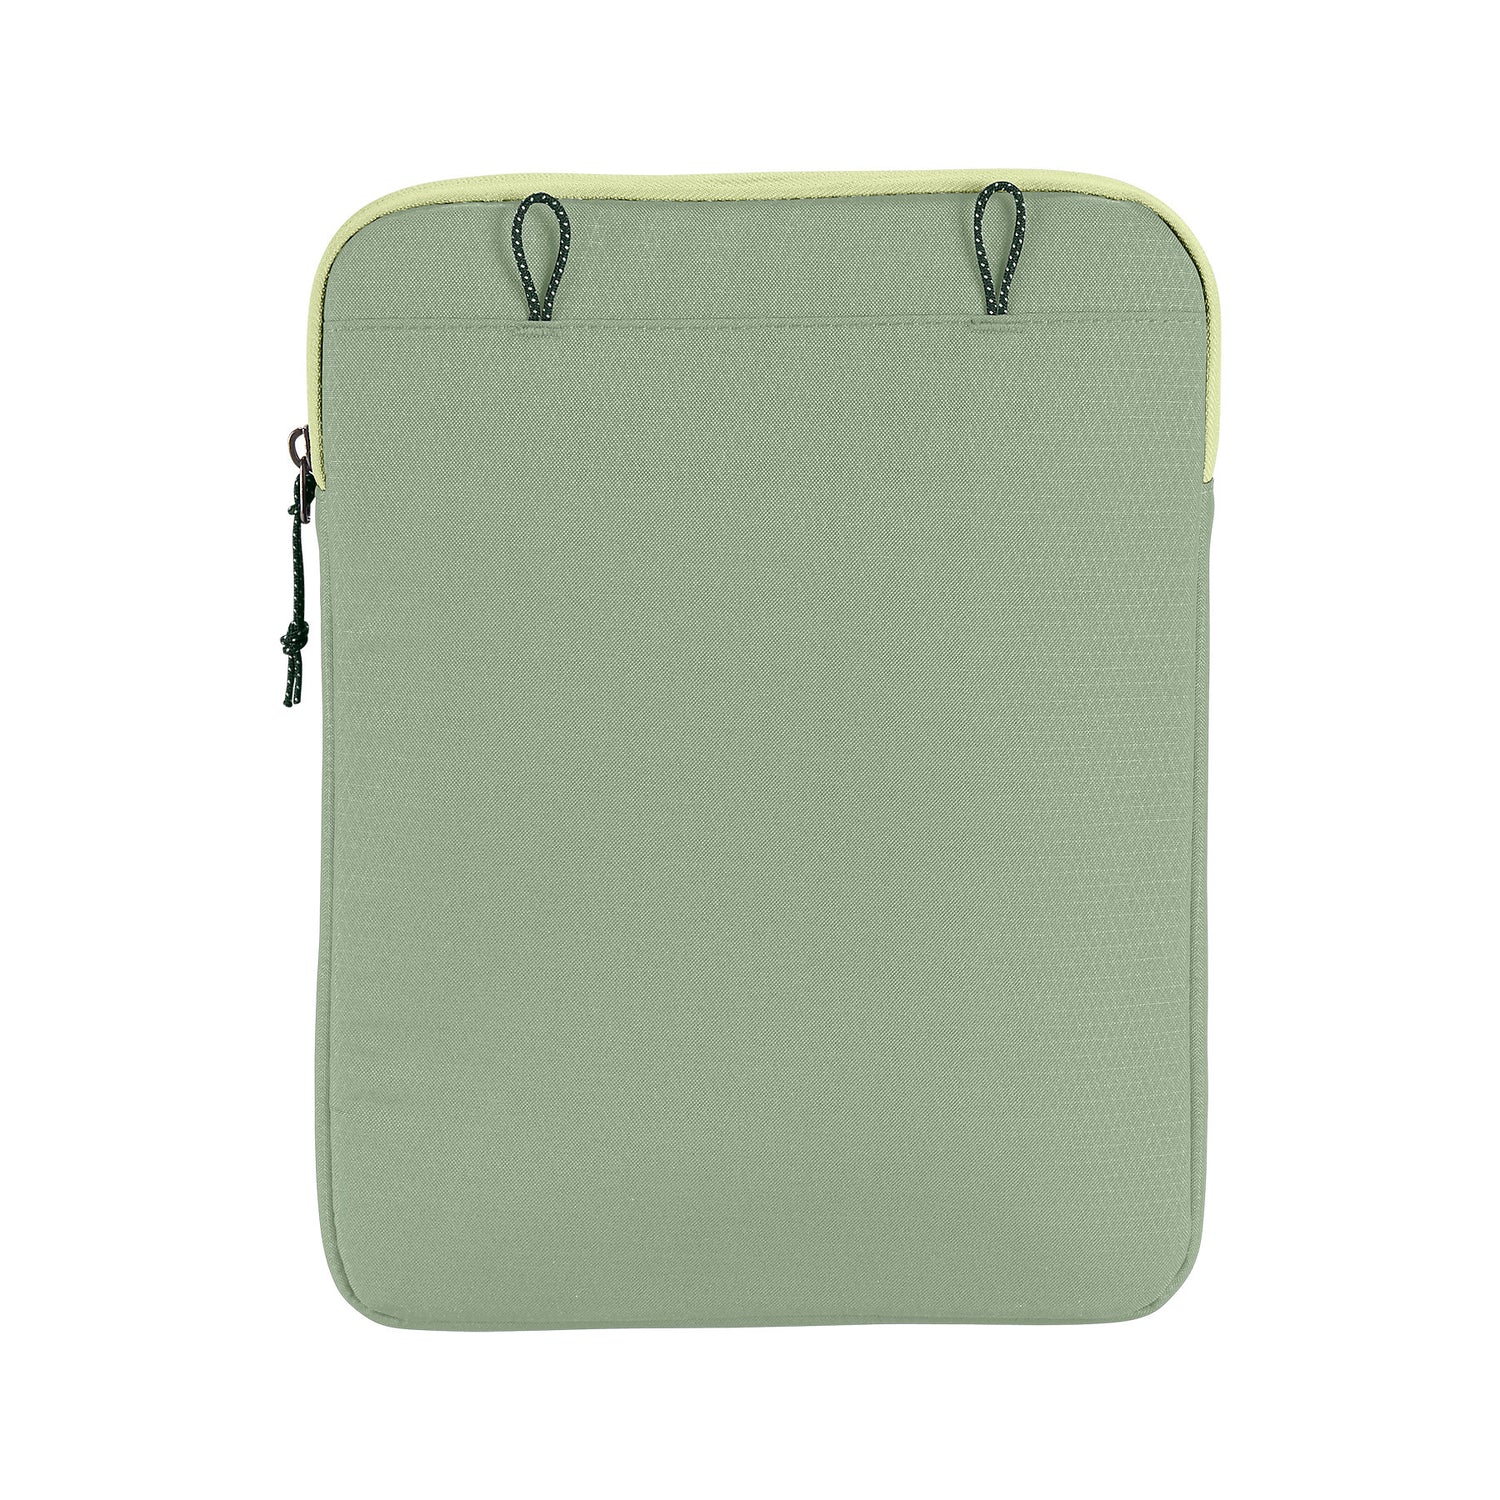 Customised Bagstud Sleek Exterior Protective Laptop Sleeve